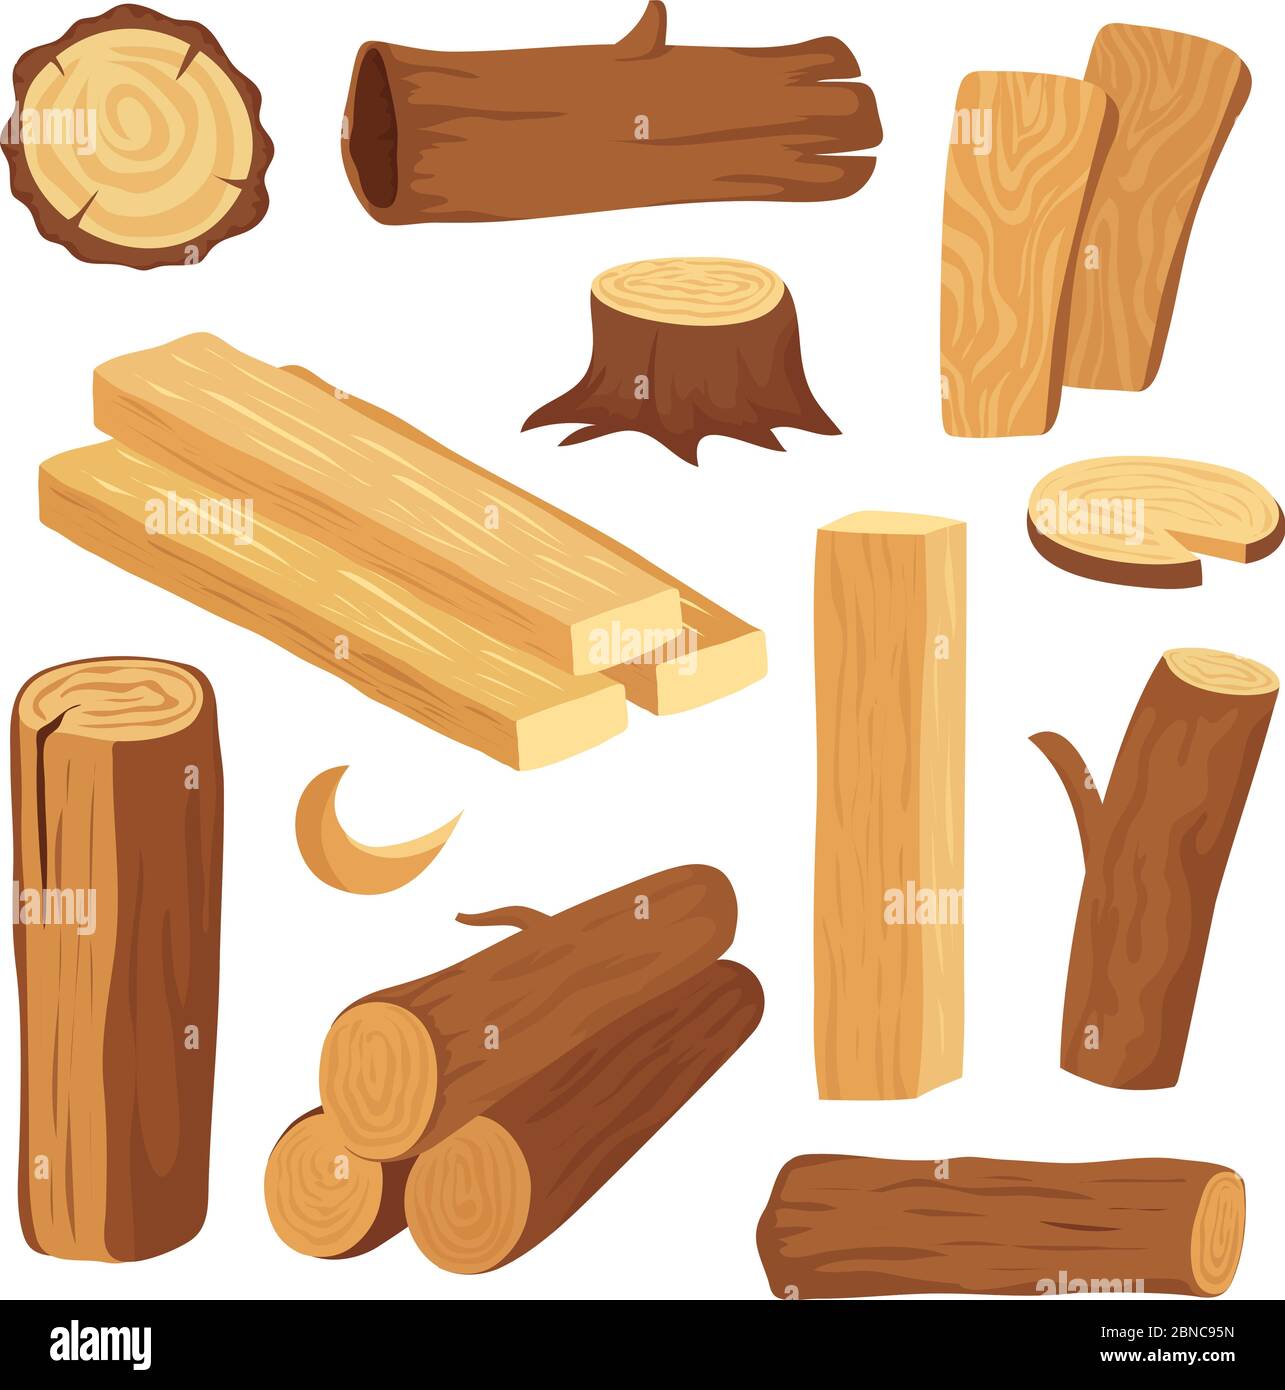 Cartoon-Holz. Holzstamm und Stamm, Stumpf und Planke. Holz Brennholz logs. Harthölzer Baumaterialien Vektor isoliert Set. Illustration von Brennholz und Holz Natur Stock Vektor